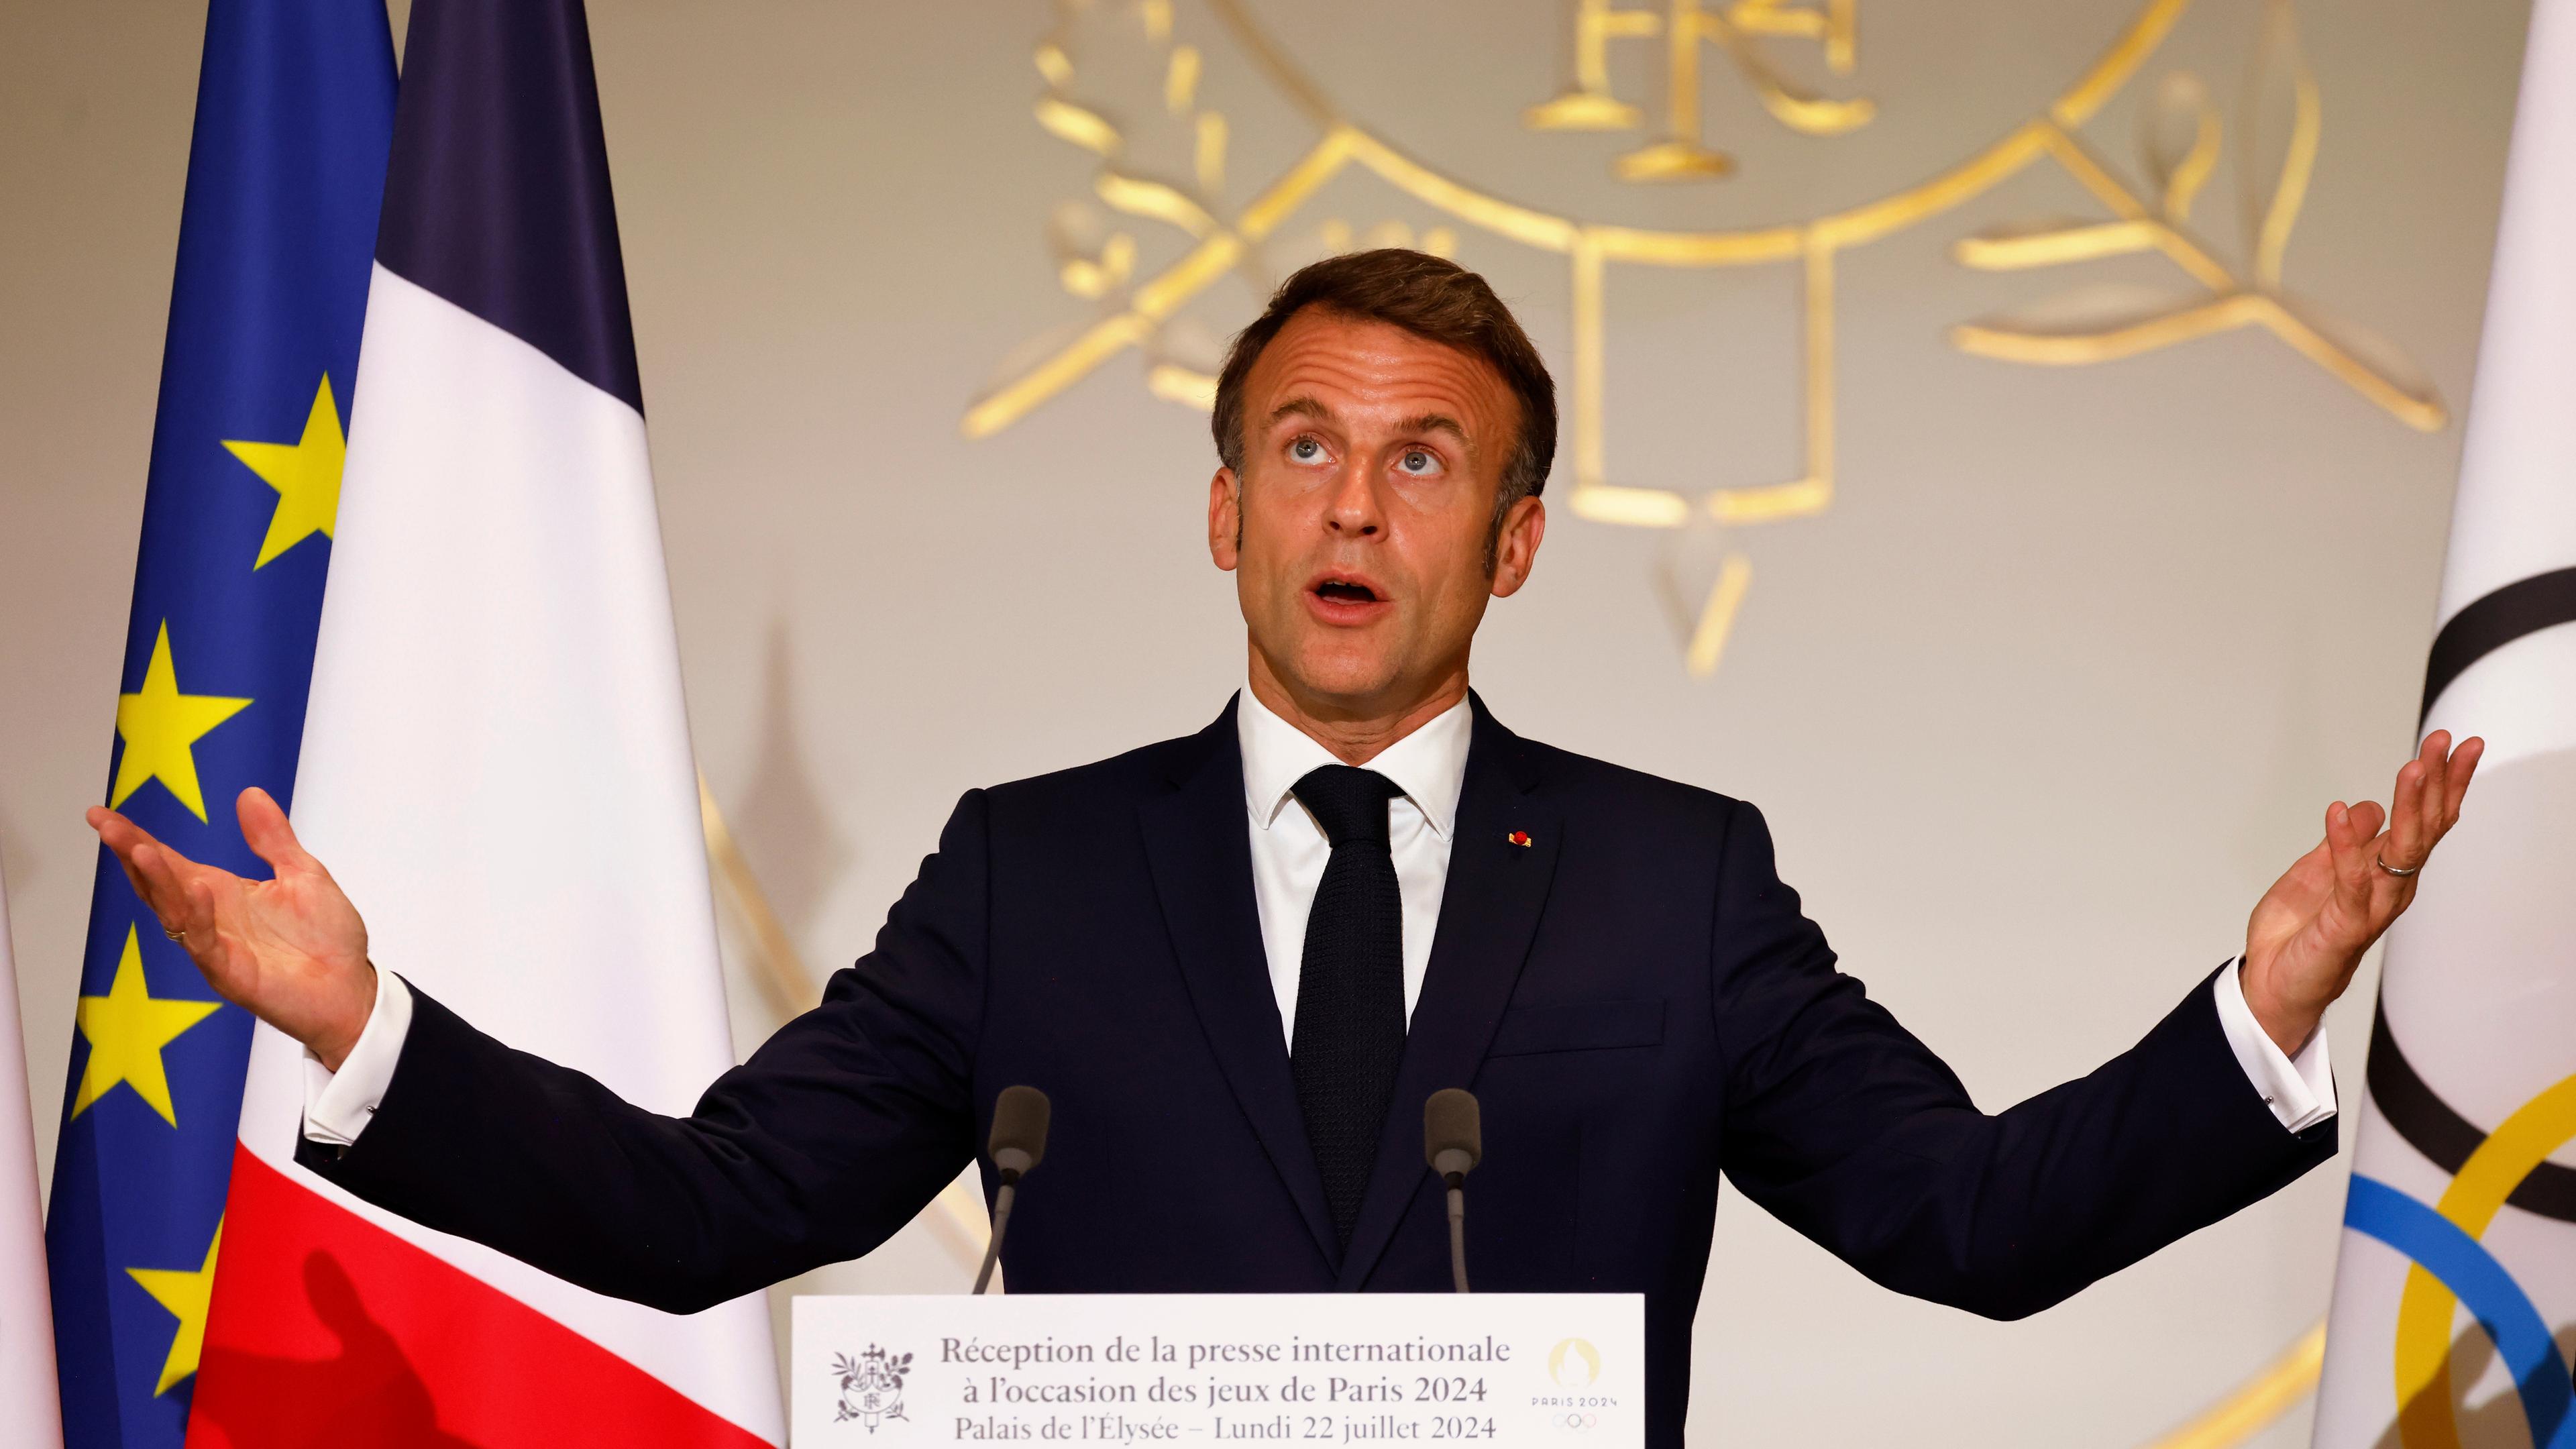 Vor den Olympischen Sommerspielen, Olympia Paris 2024, der französische Präsident Emmanuel Macron gestikuliert bei seiner Rede während eines Empfangs für internationale Journalisten